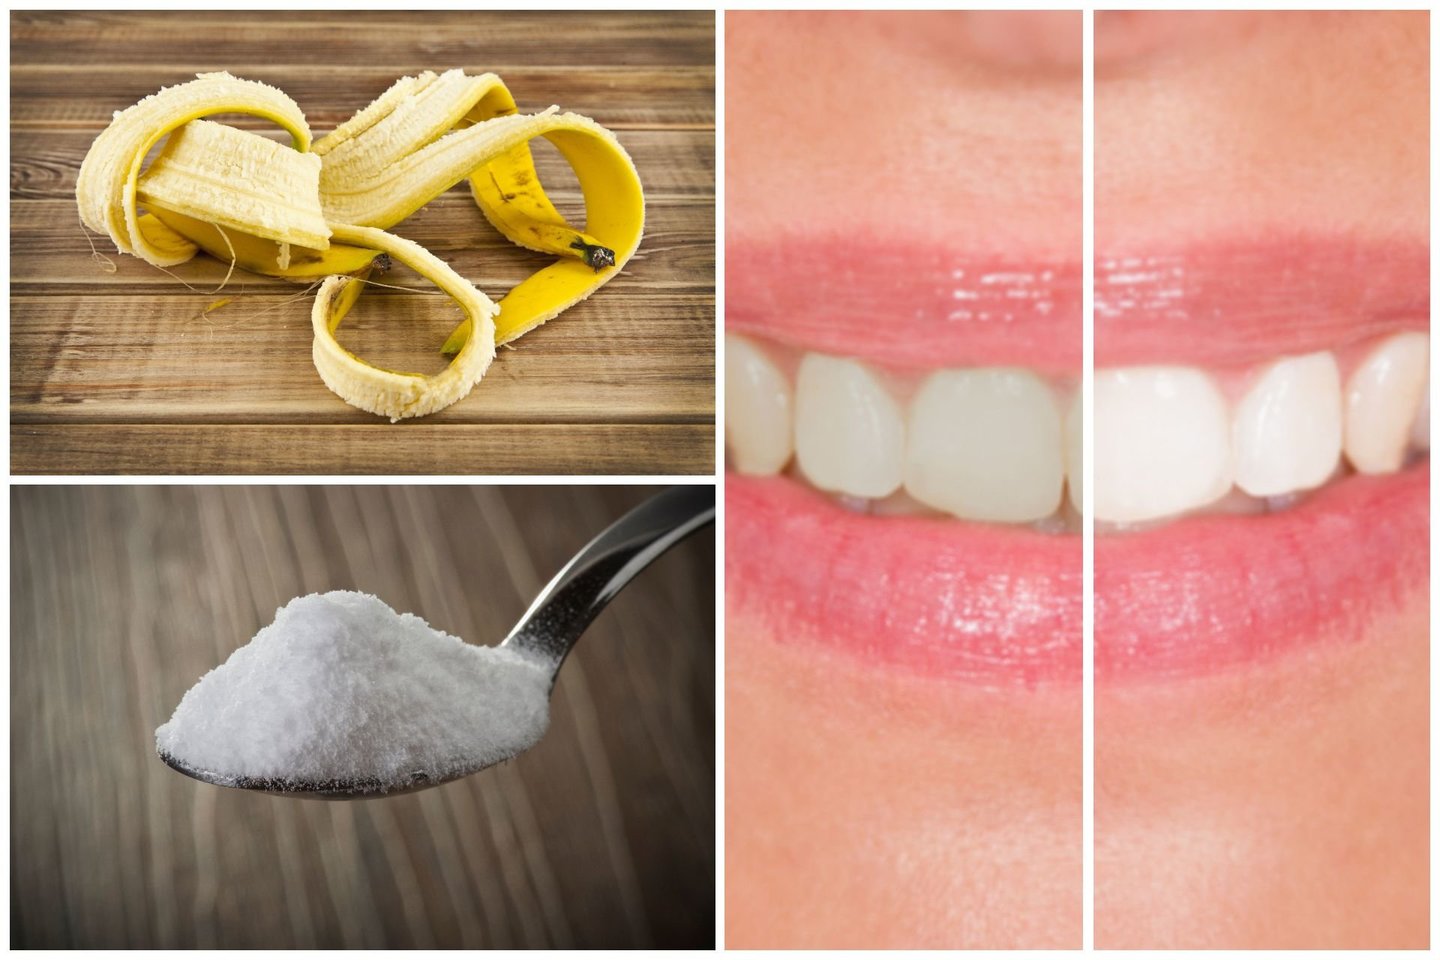  Netinkamai naudodami šias priemones galime sukelti dantų ir dantenų pažeidimų, tam tikram arba visam laikui sutrikdyti skonio receptorius.<br> 123rf nuotr.